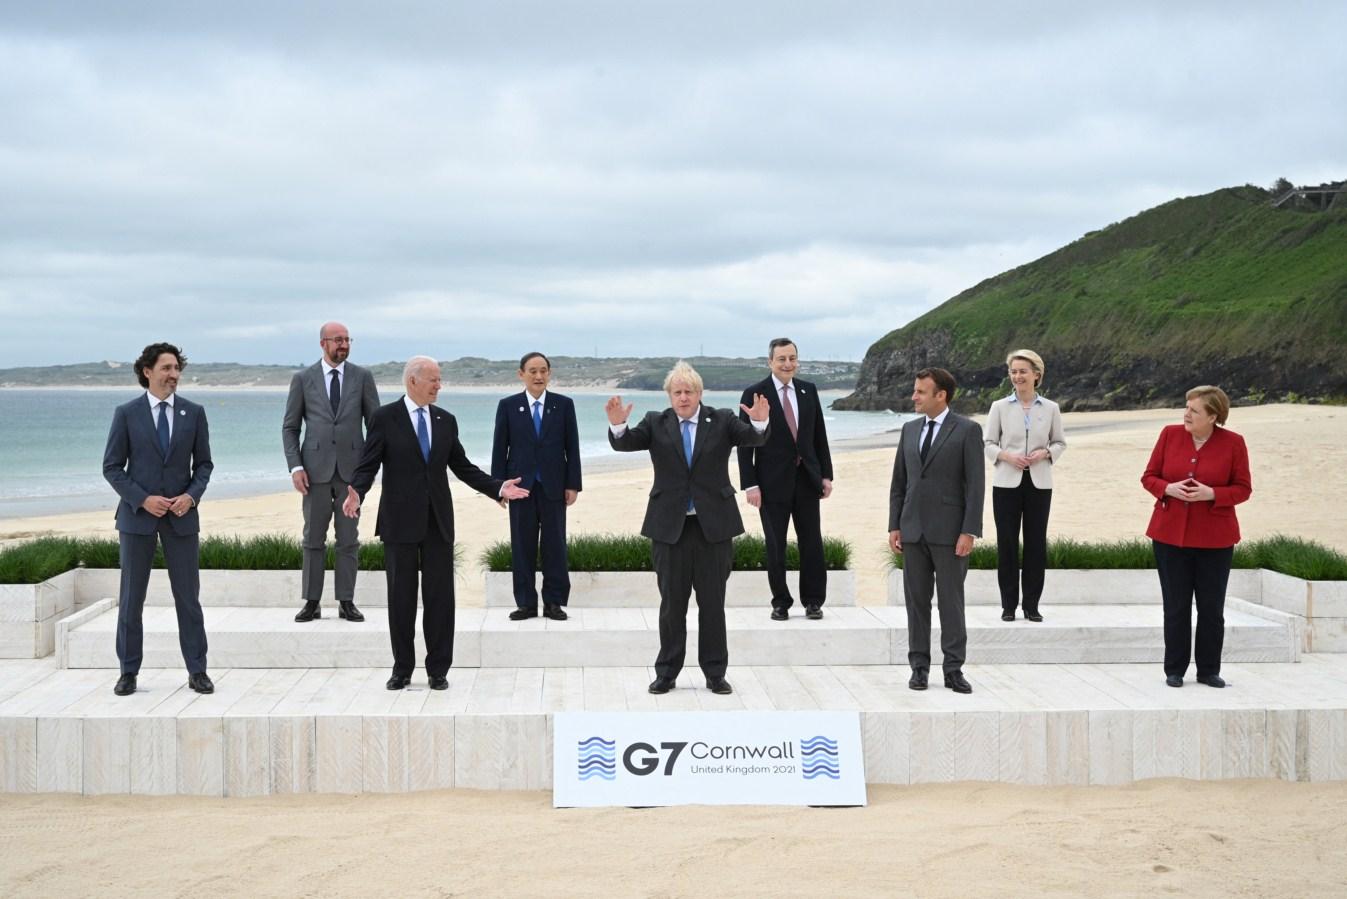 Počeo samit G7, lideri se fotografirali na plaži